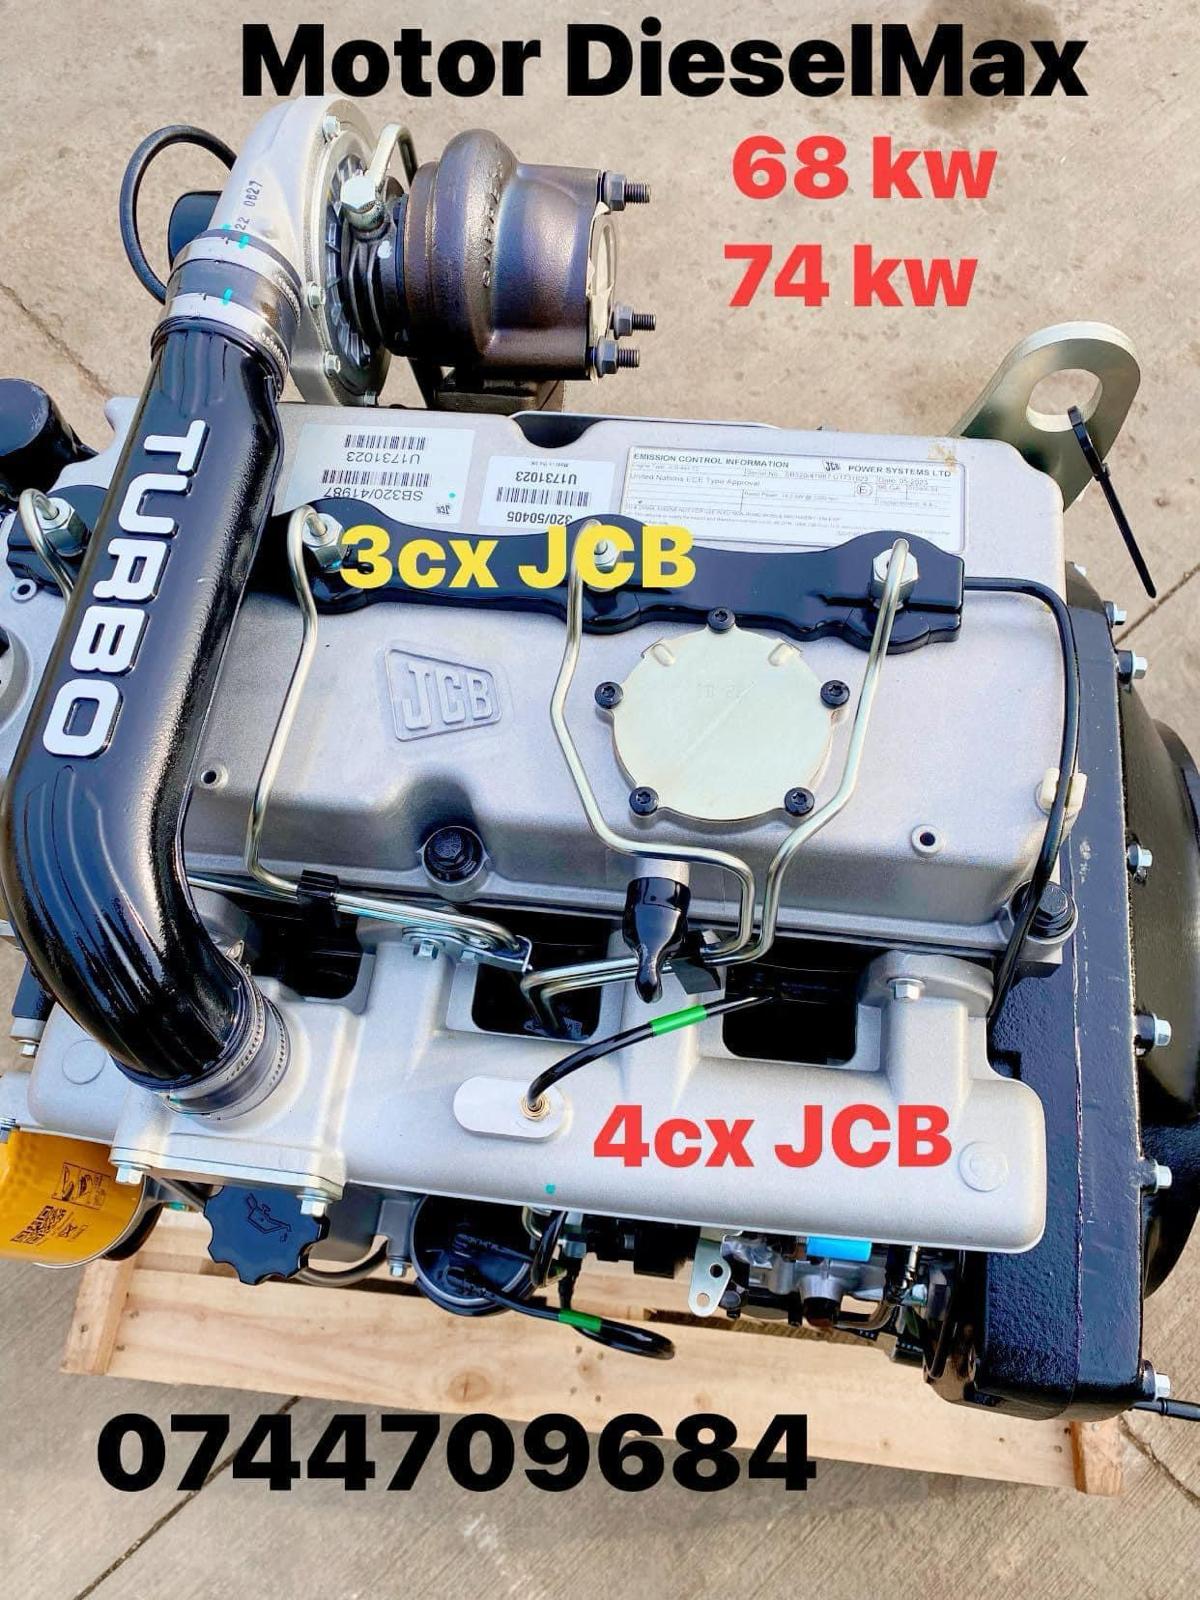 Motor DieselMax pentru utilaje JCB in stoc